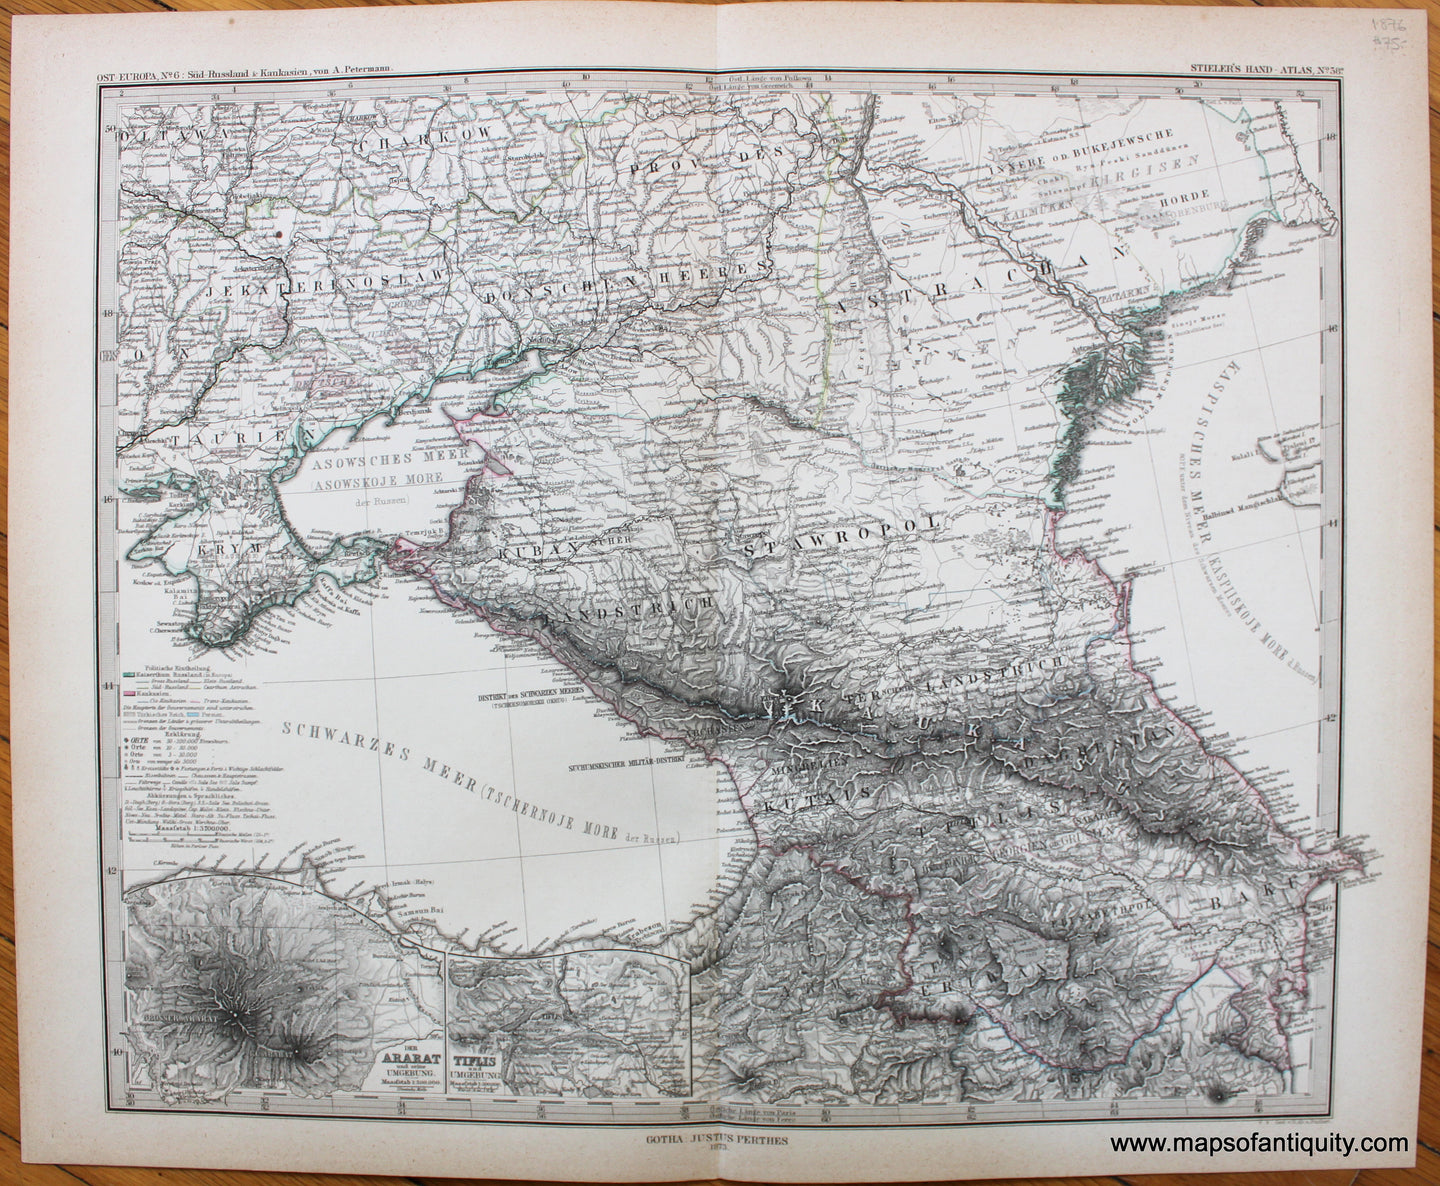 Antique-Map-Eastern-Europe-Caucasus-Armenia-Stieler-1876-1870s-1800s-19th-century-Maps-of-Antiquity